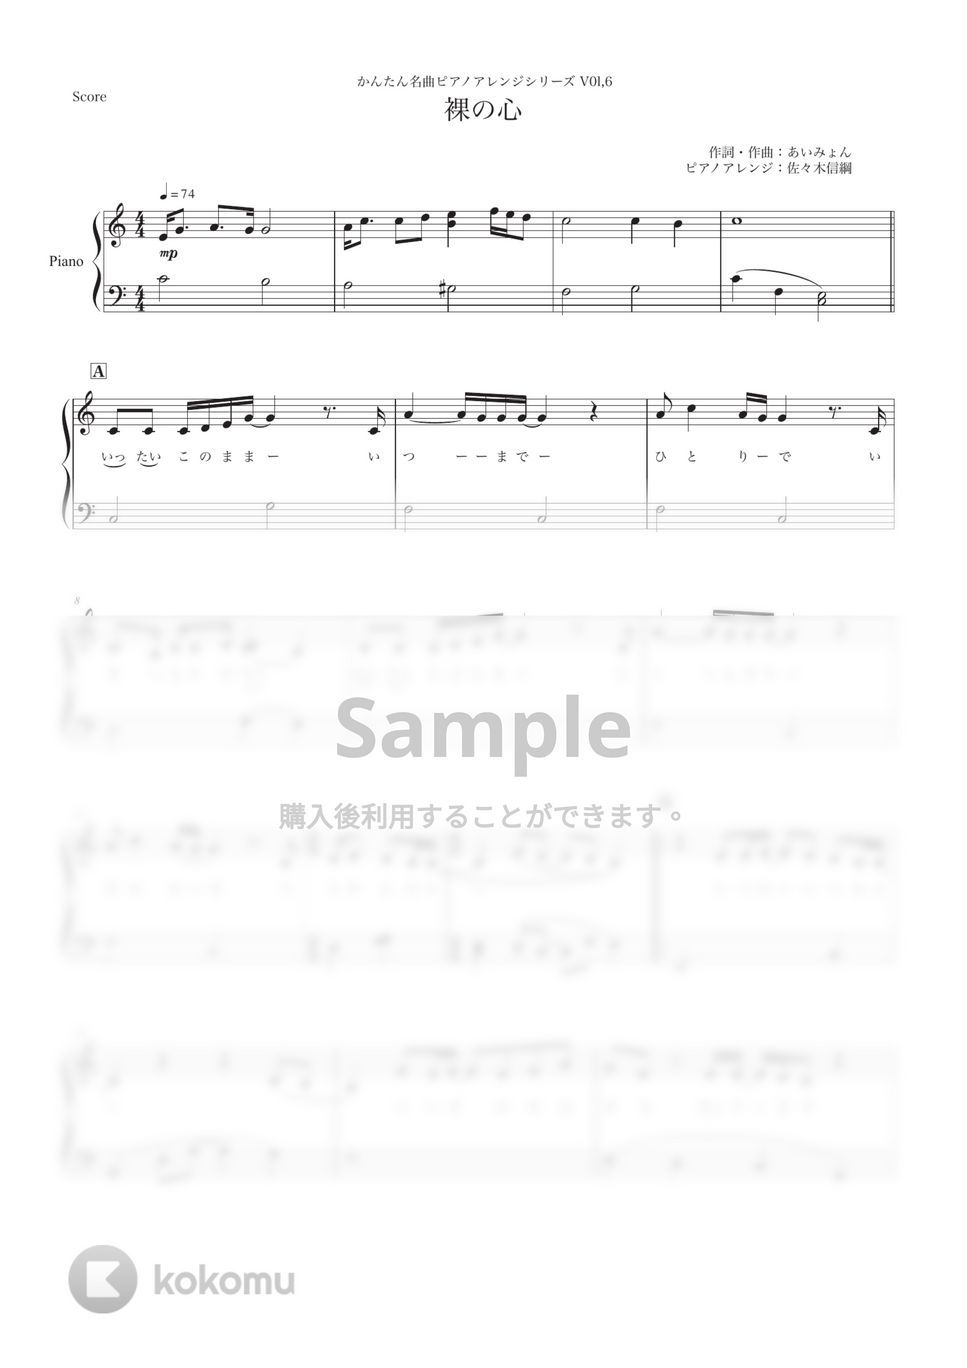 あいみょん - 裸の心 (ピアノソロ / 弾き語り) by 佐々木信綱